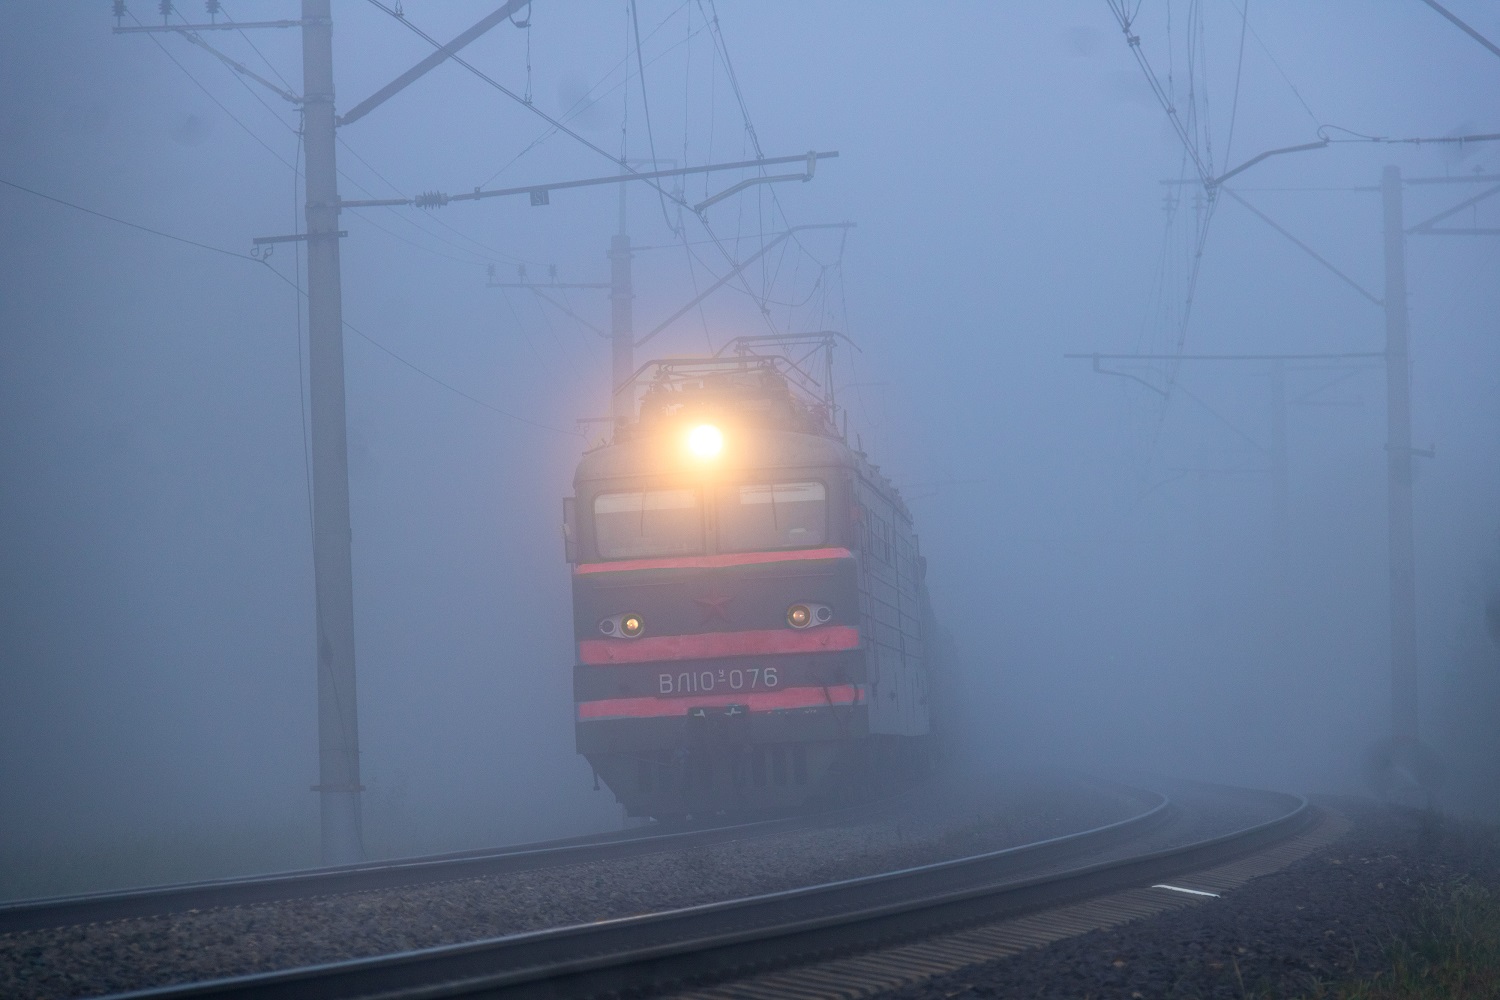 ВЛ10У-076; Фотозарисовки (Московская железная дорога)